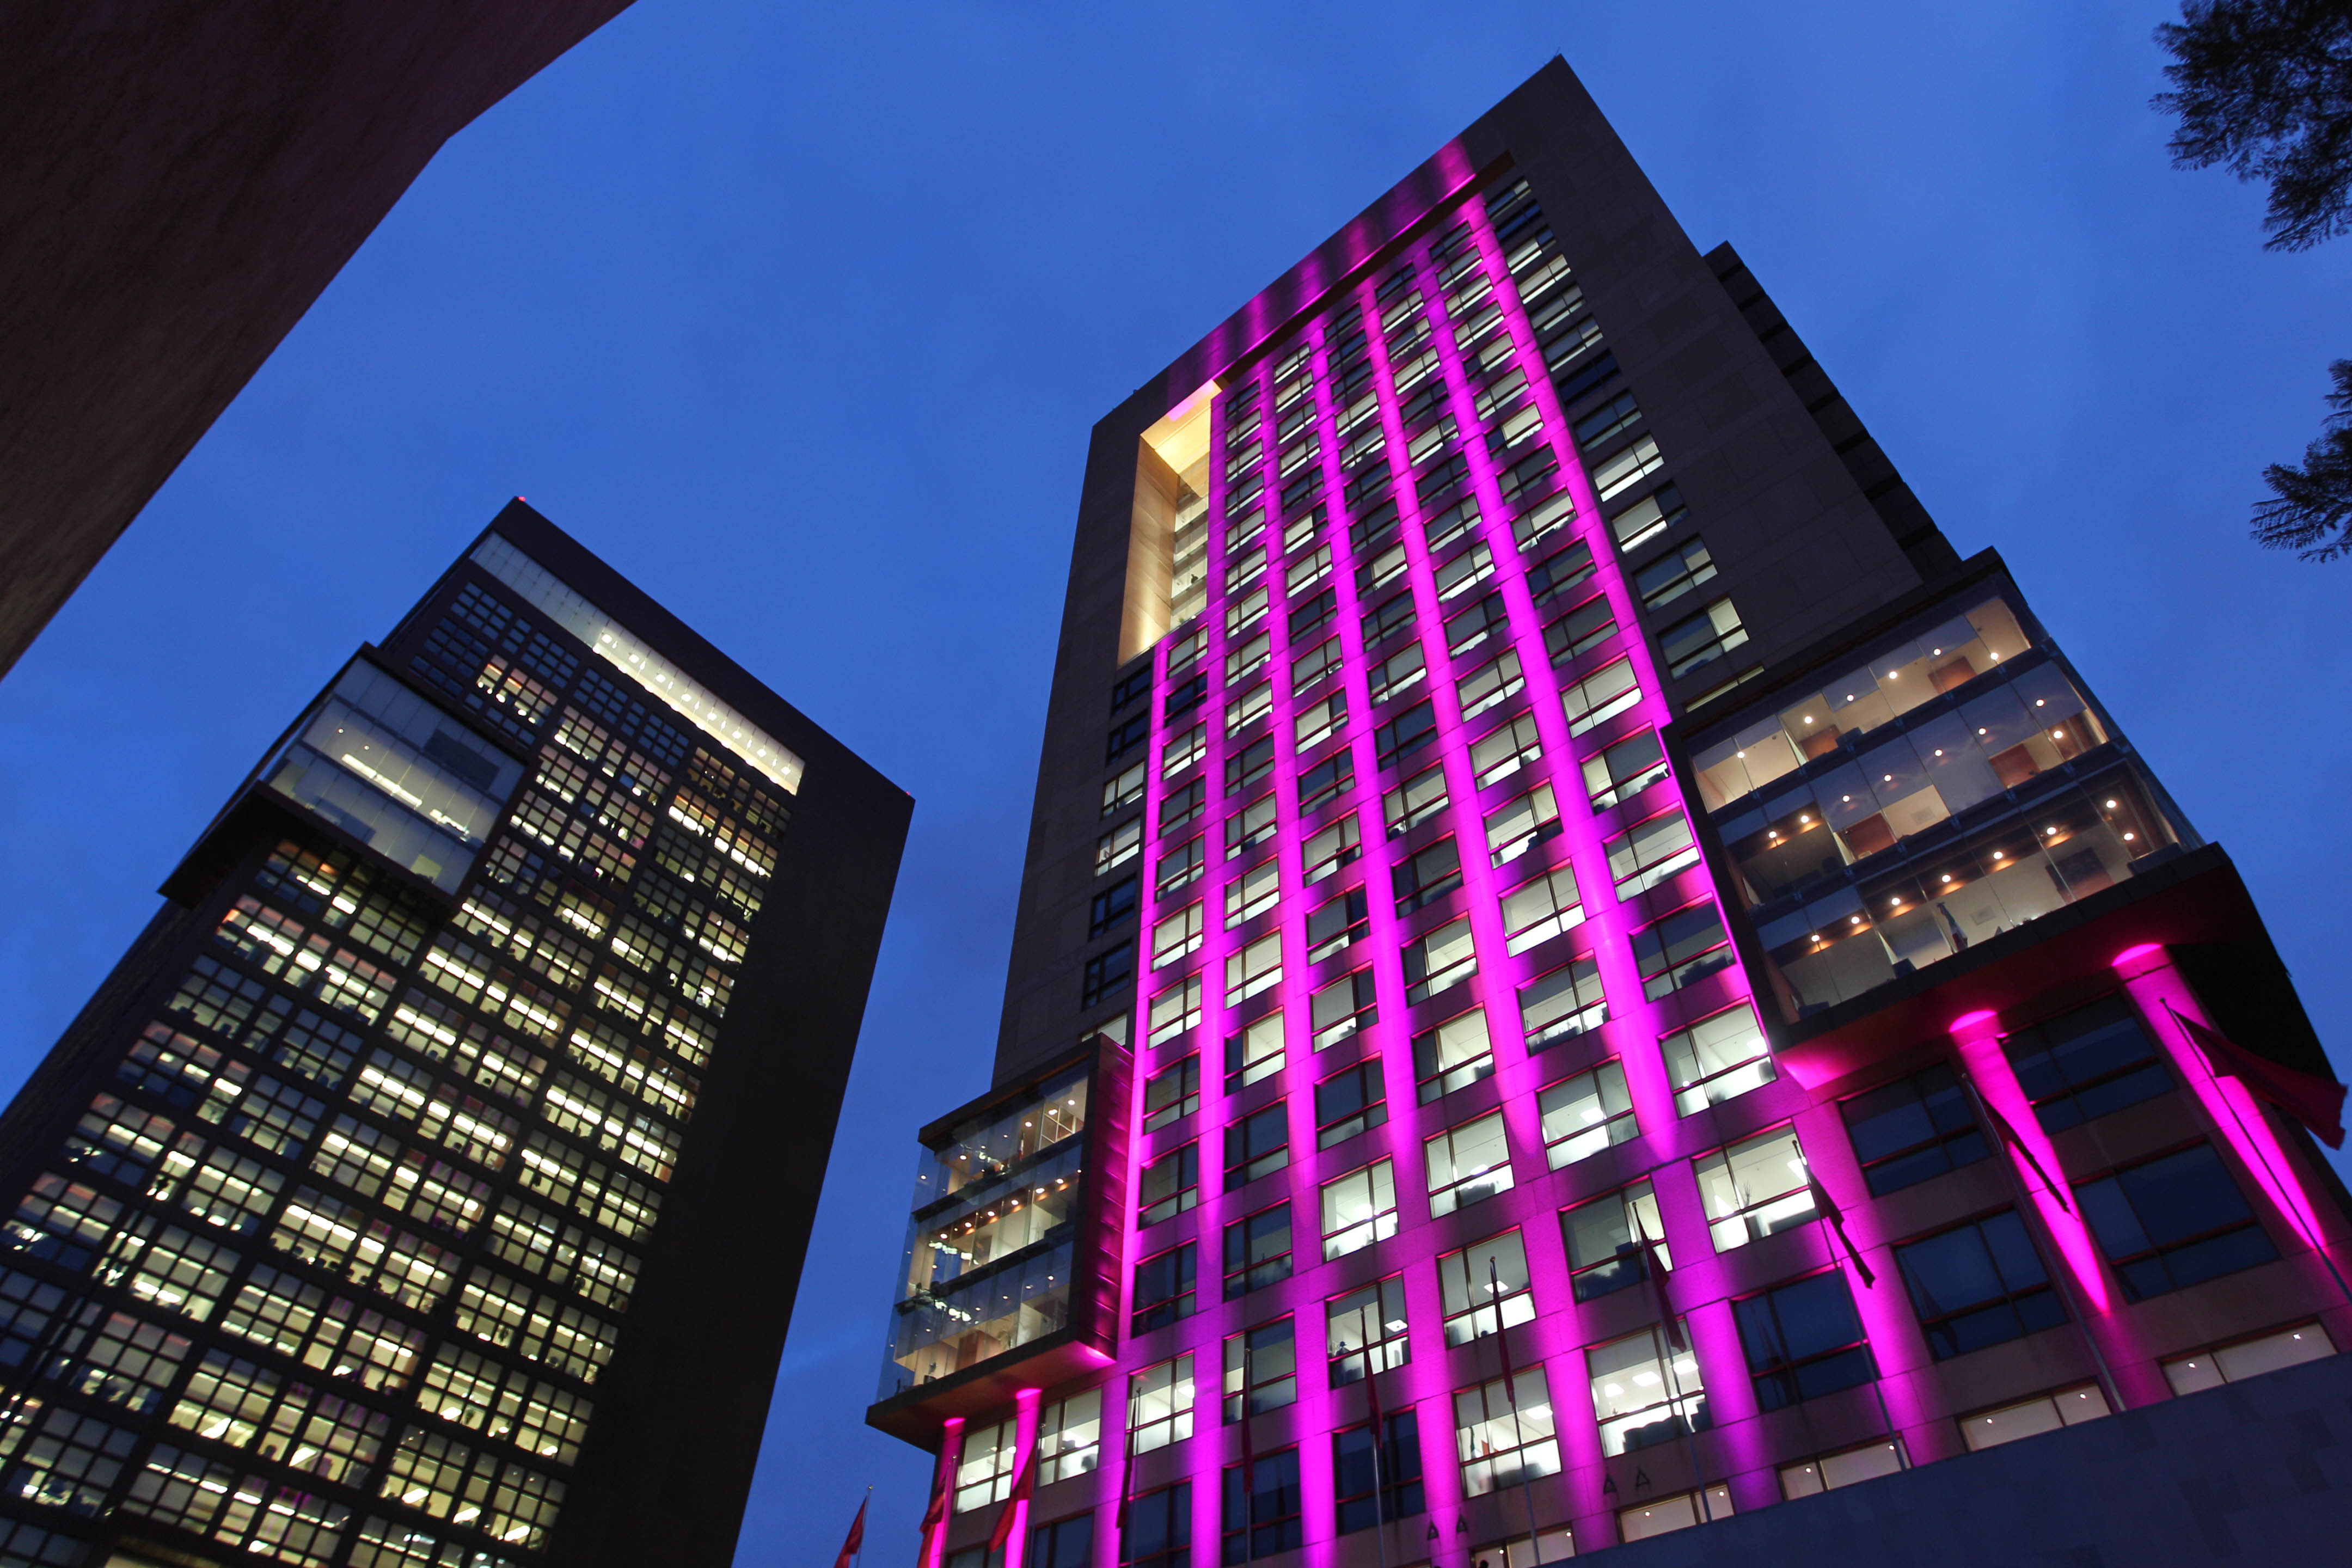 FOTO 1 Edificio de la SRE se ilumina de rosa en el D a internacional de la lucha contra el c ncer de mama.jpg